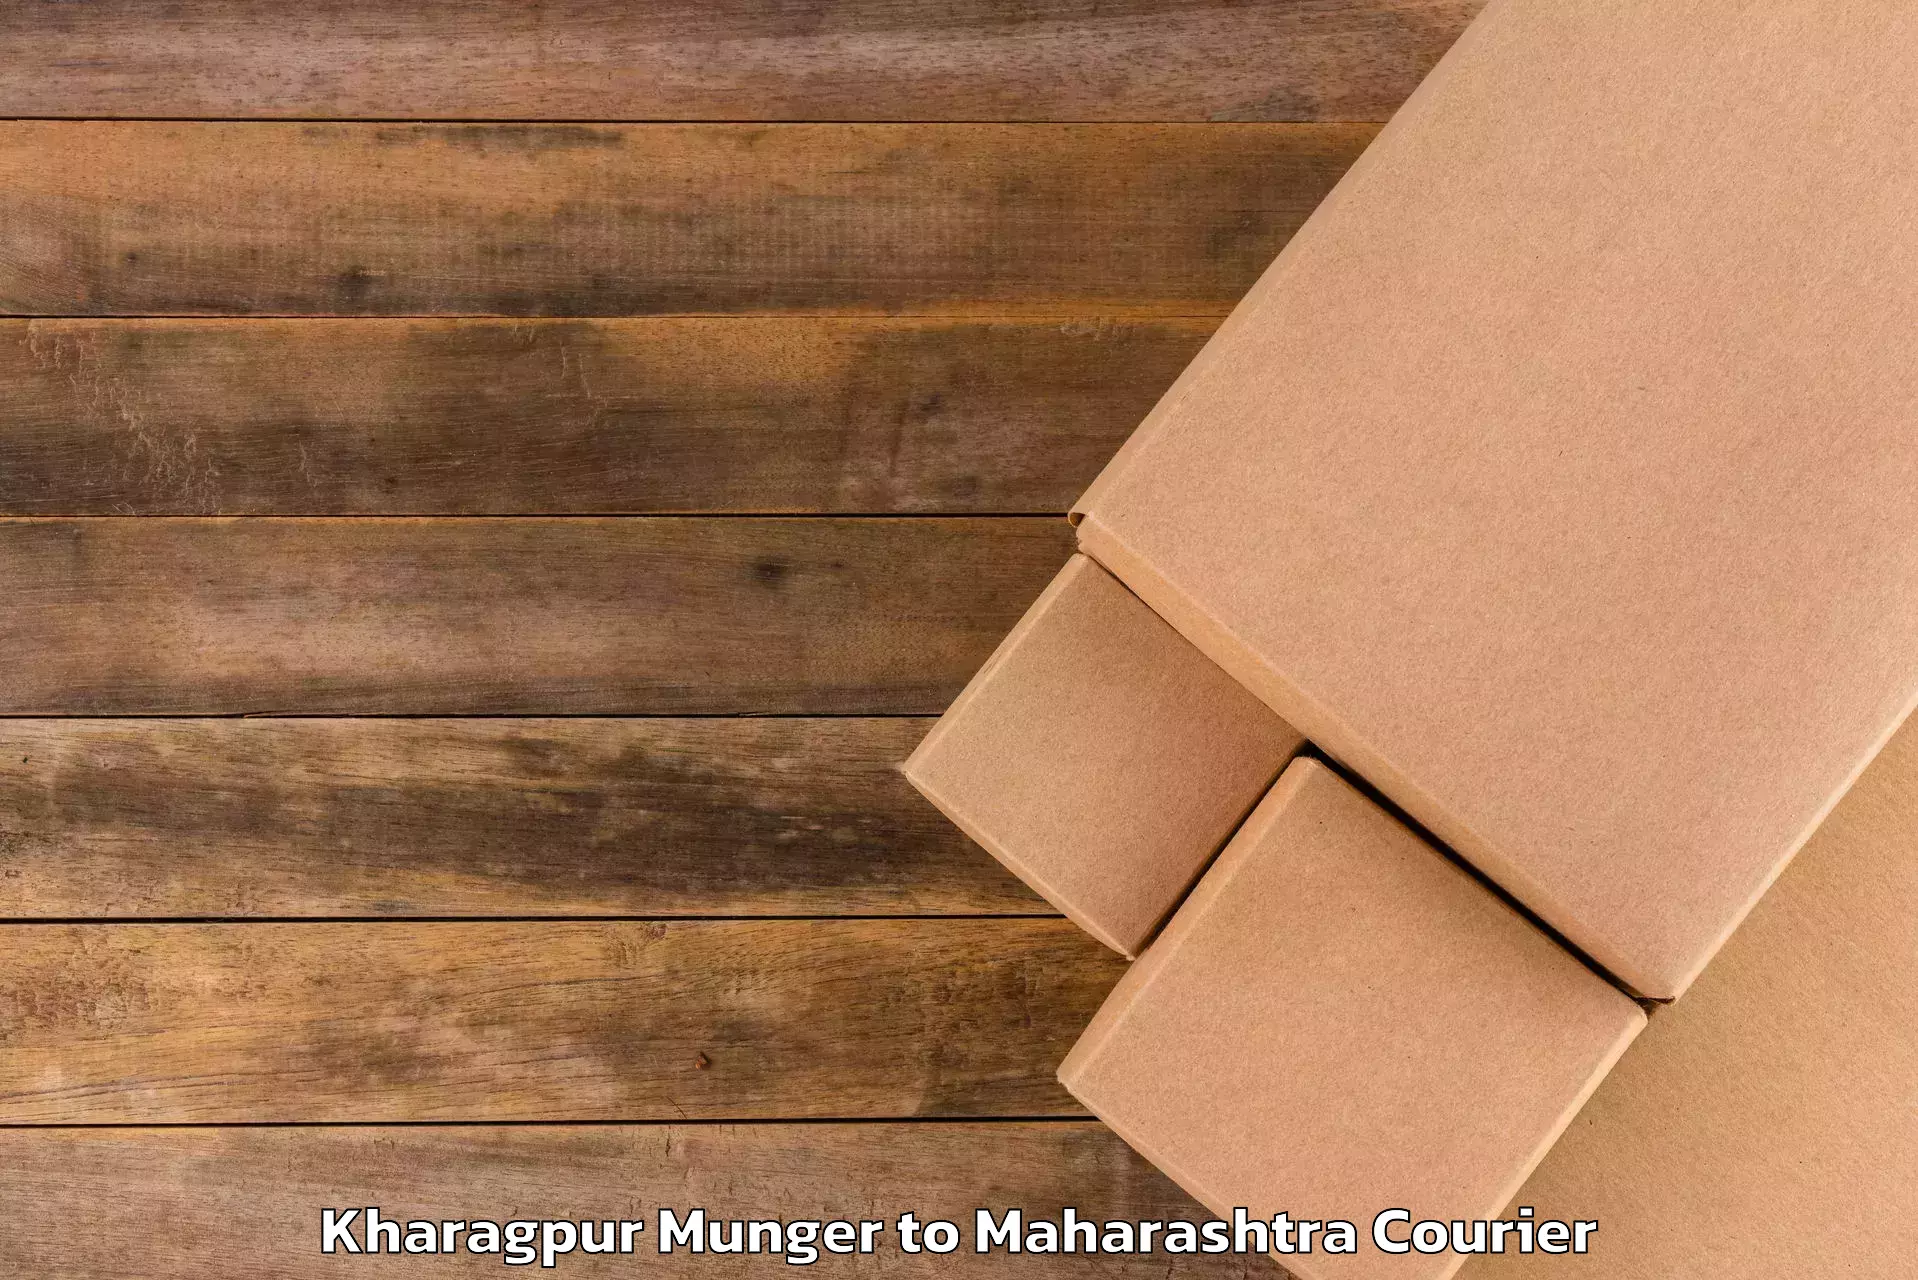 Baggage delivery solutions Kharagpur Munger to Gadhinglaj